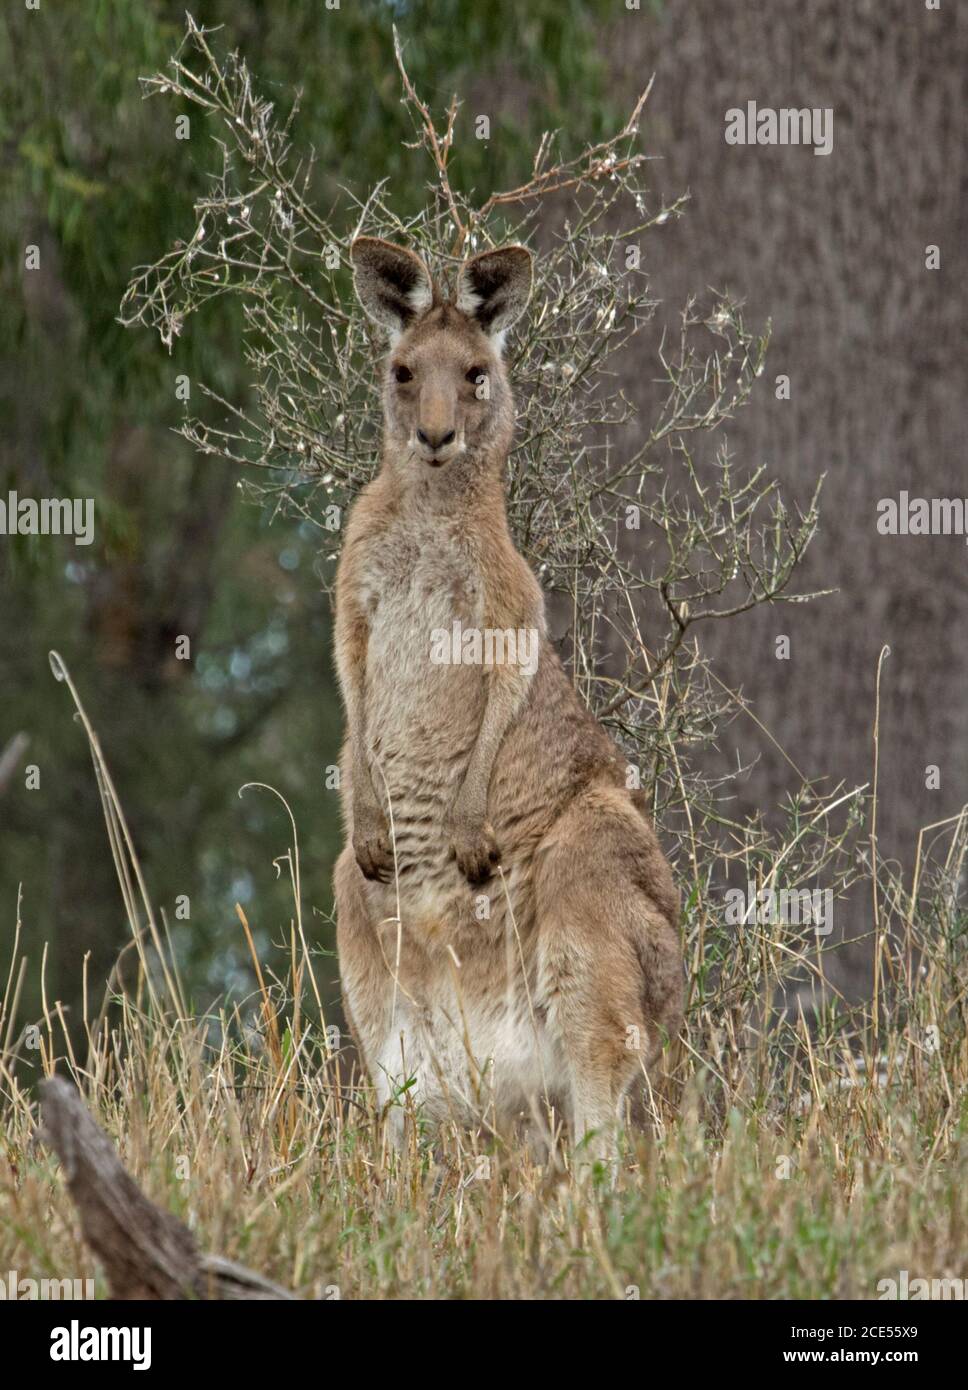 Le kangourou australien est gris alerte et regardant à l'appareil photo, dans la nature, avec un fond de graminées et de feuillage vert Banque D'Images